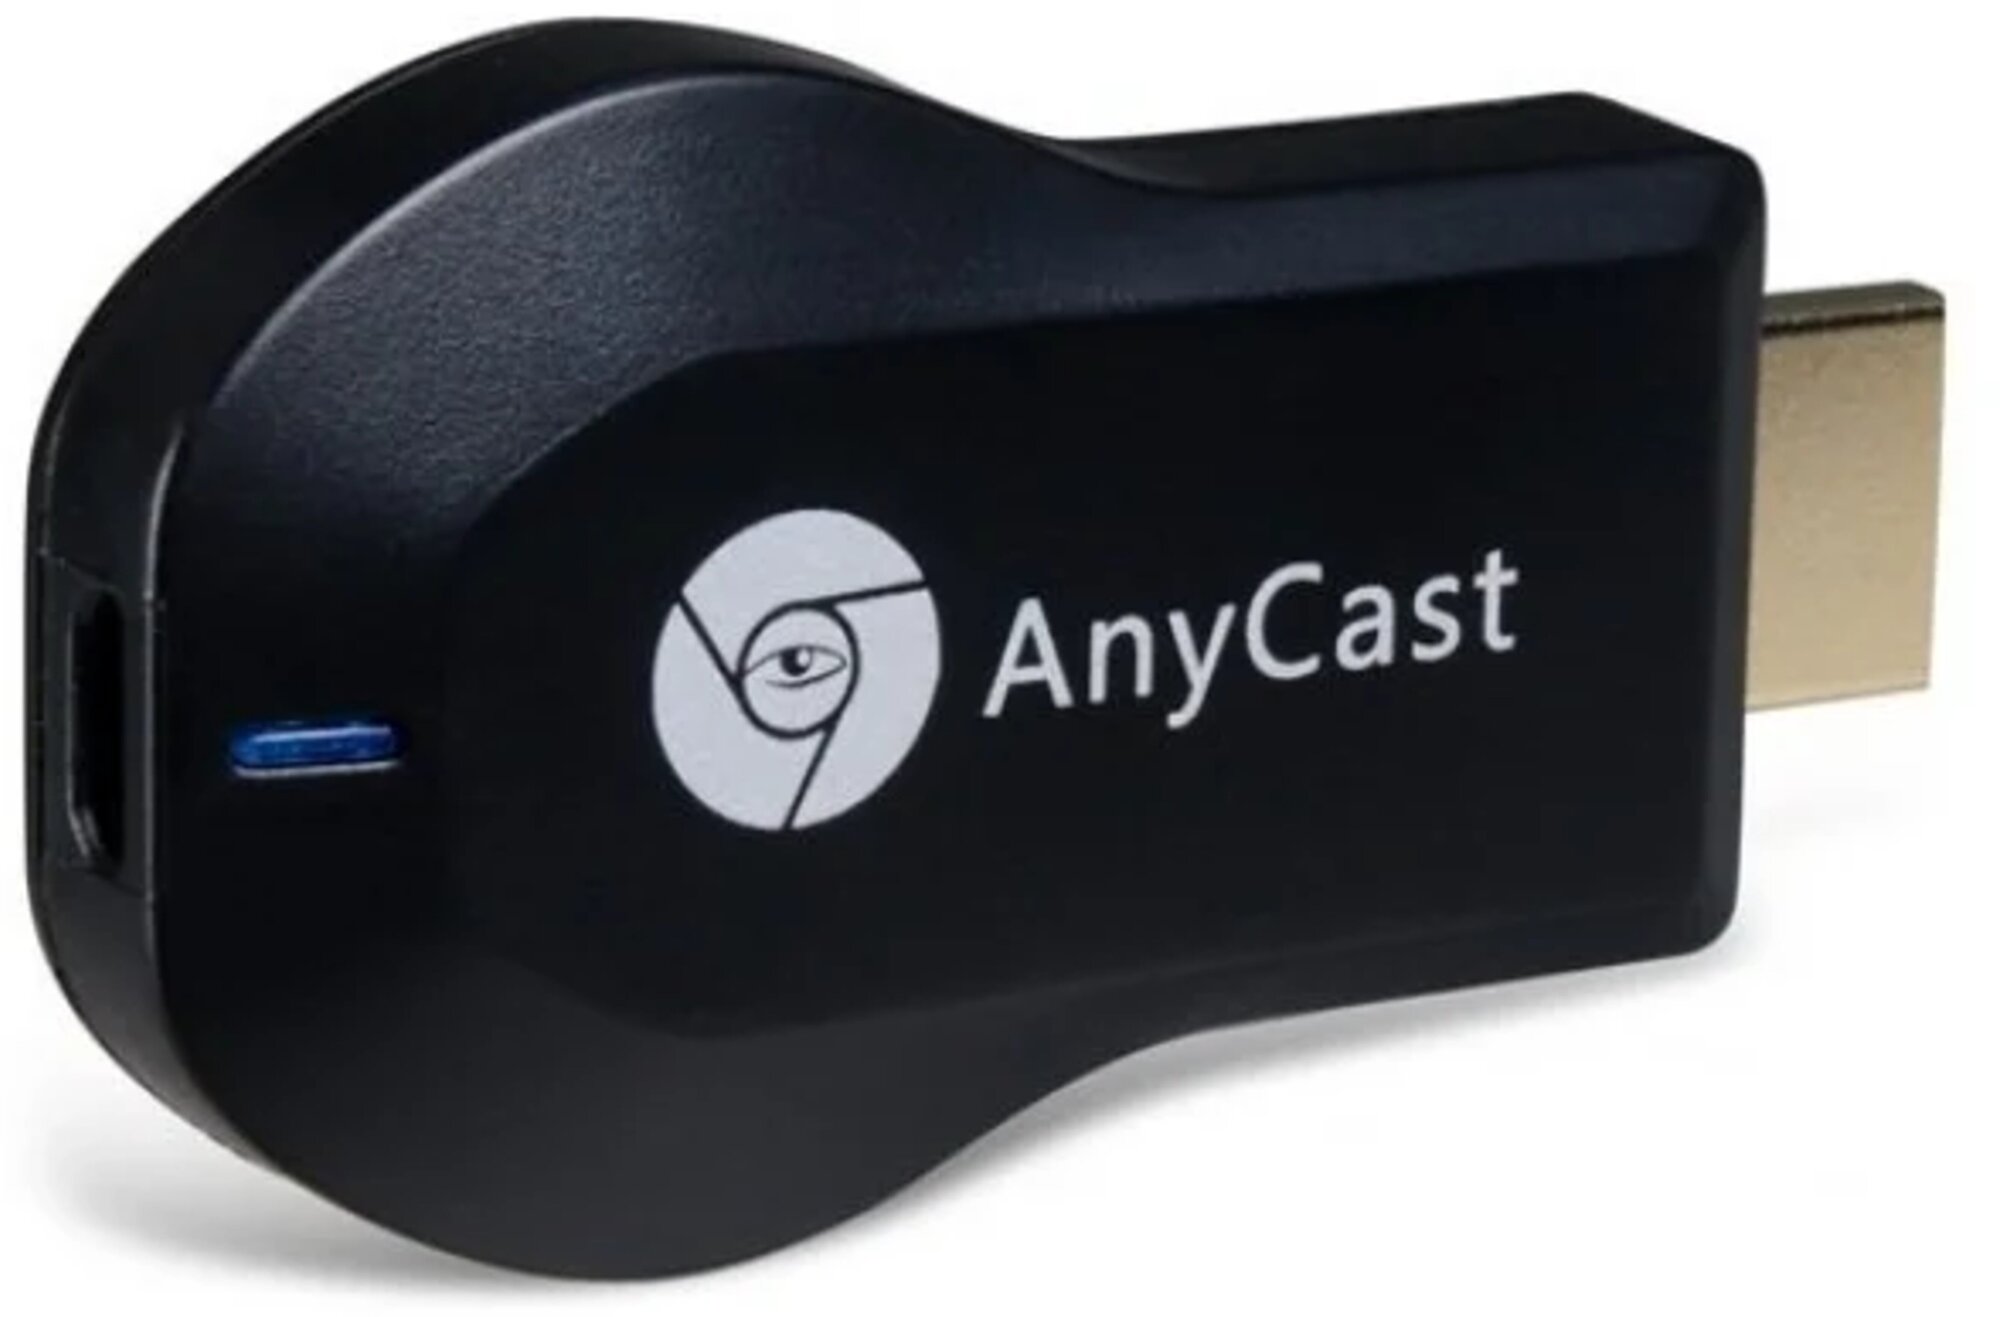 ТВ-адаптер AnyCast M4 Plus